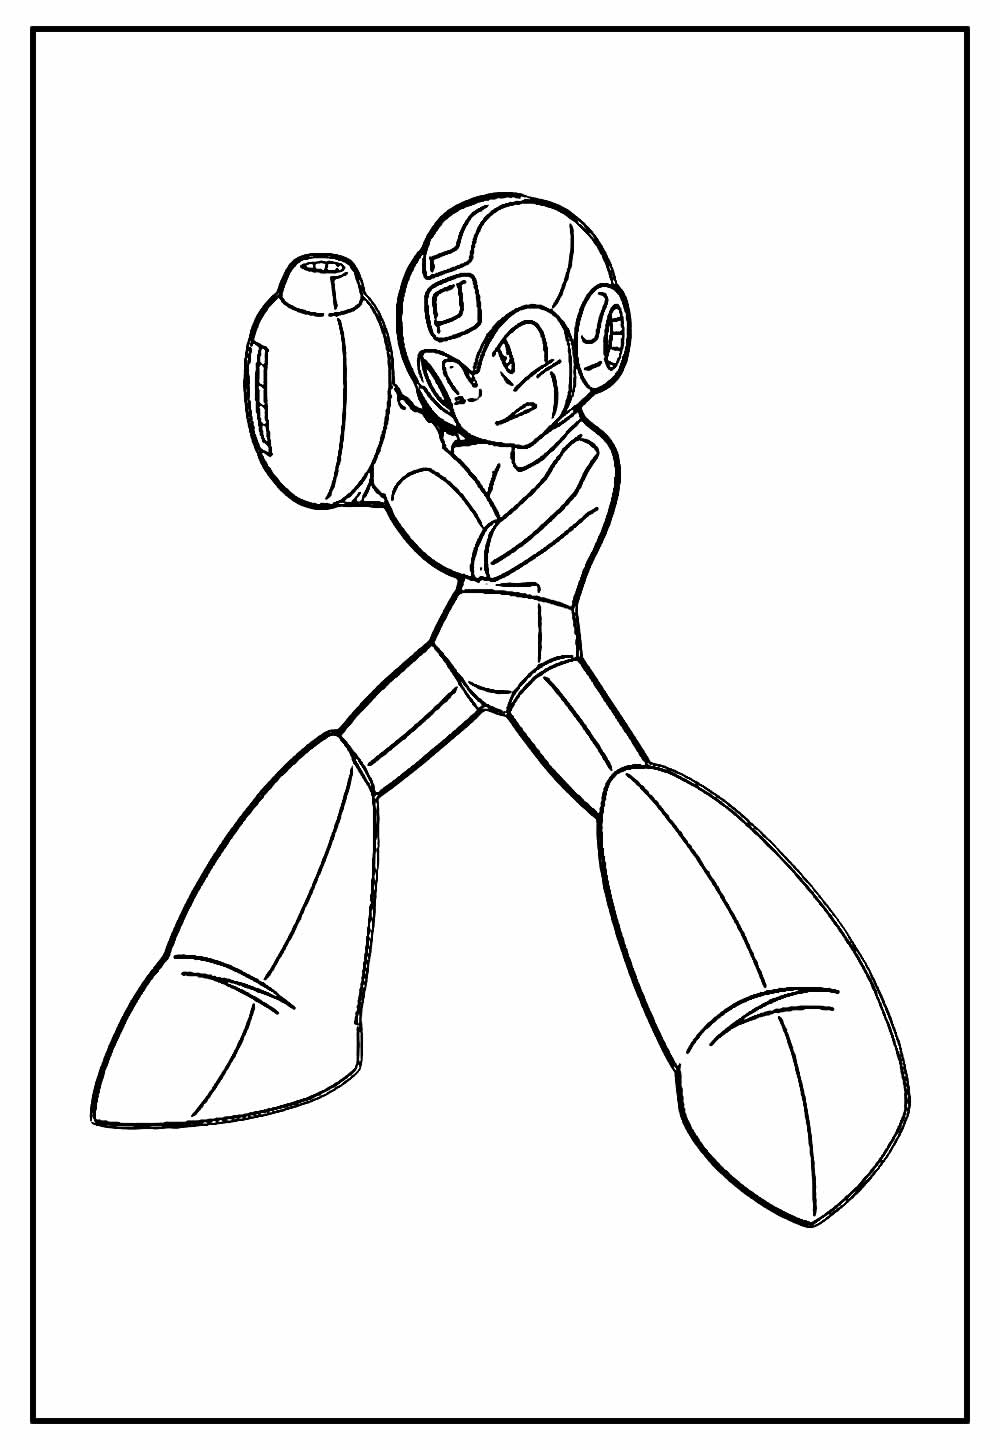 Desenho do Mega Man para colorir